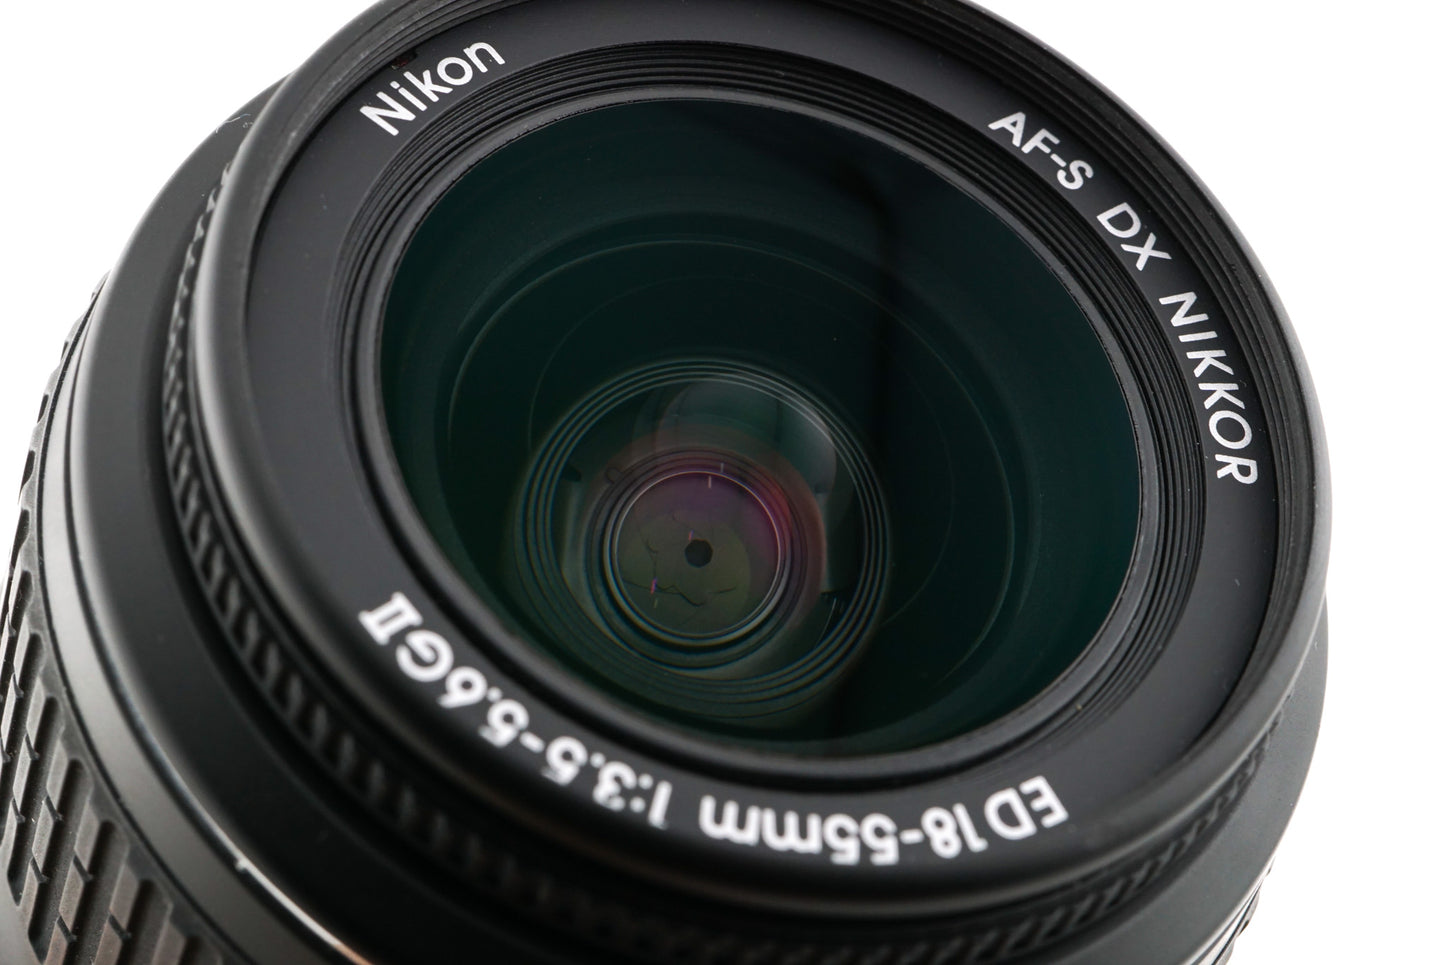 Nikon 18-55mm f3.5-5.6 AF-S Nikkor G ED DX II